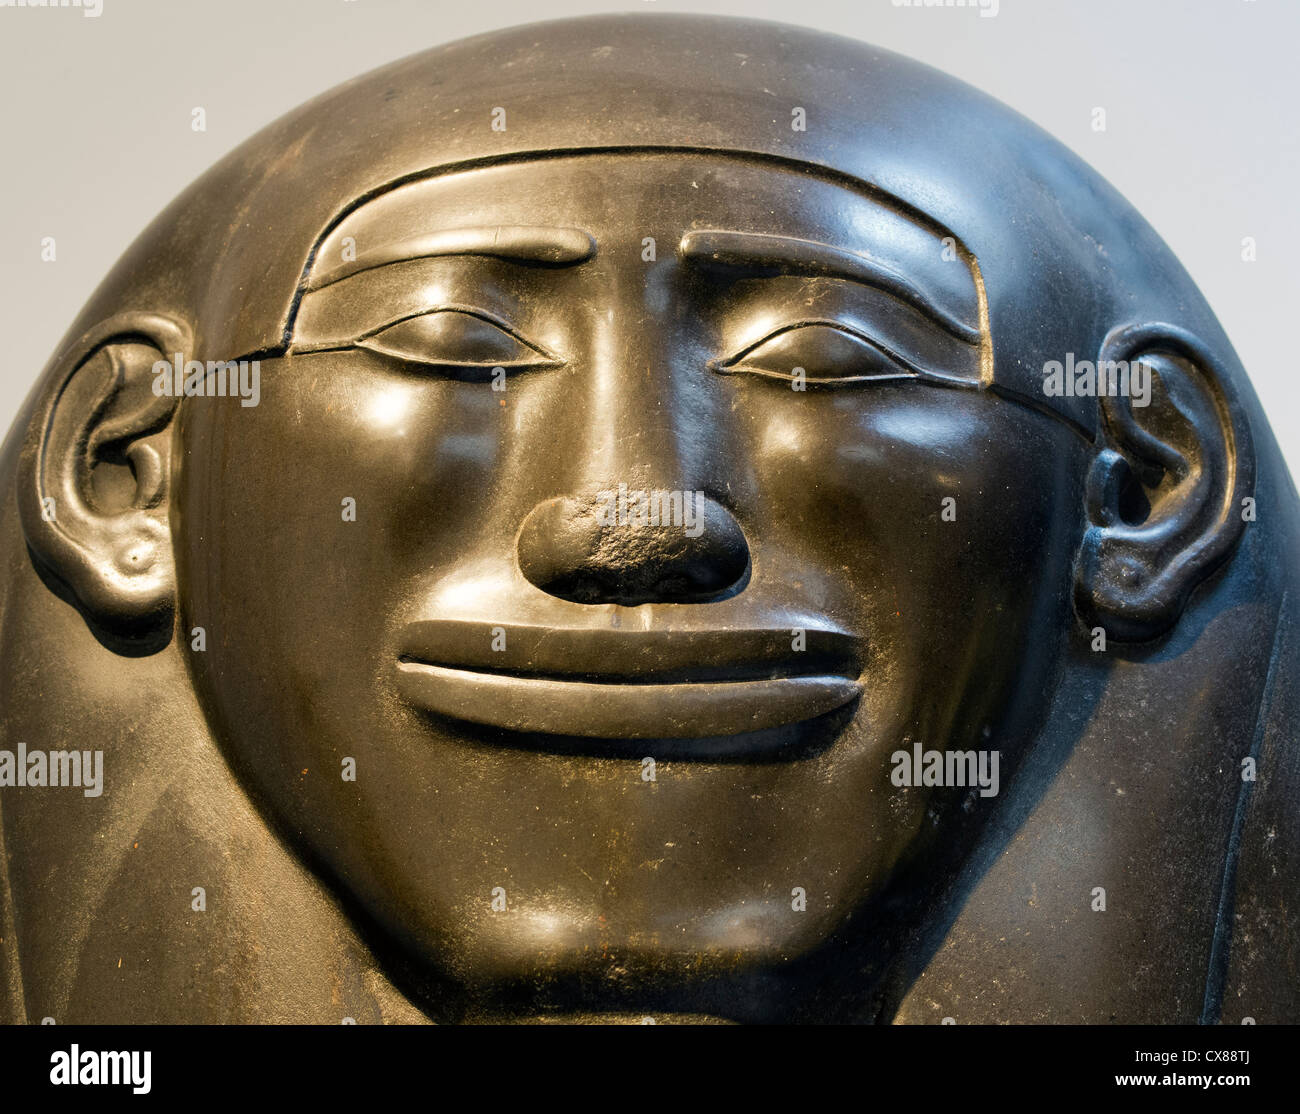 Smiley le 27 couvercle de sarcophage égyptien dynastie Ptahhotep - l'Ashmolean Museum, Oxford Banque D'Images